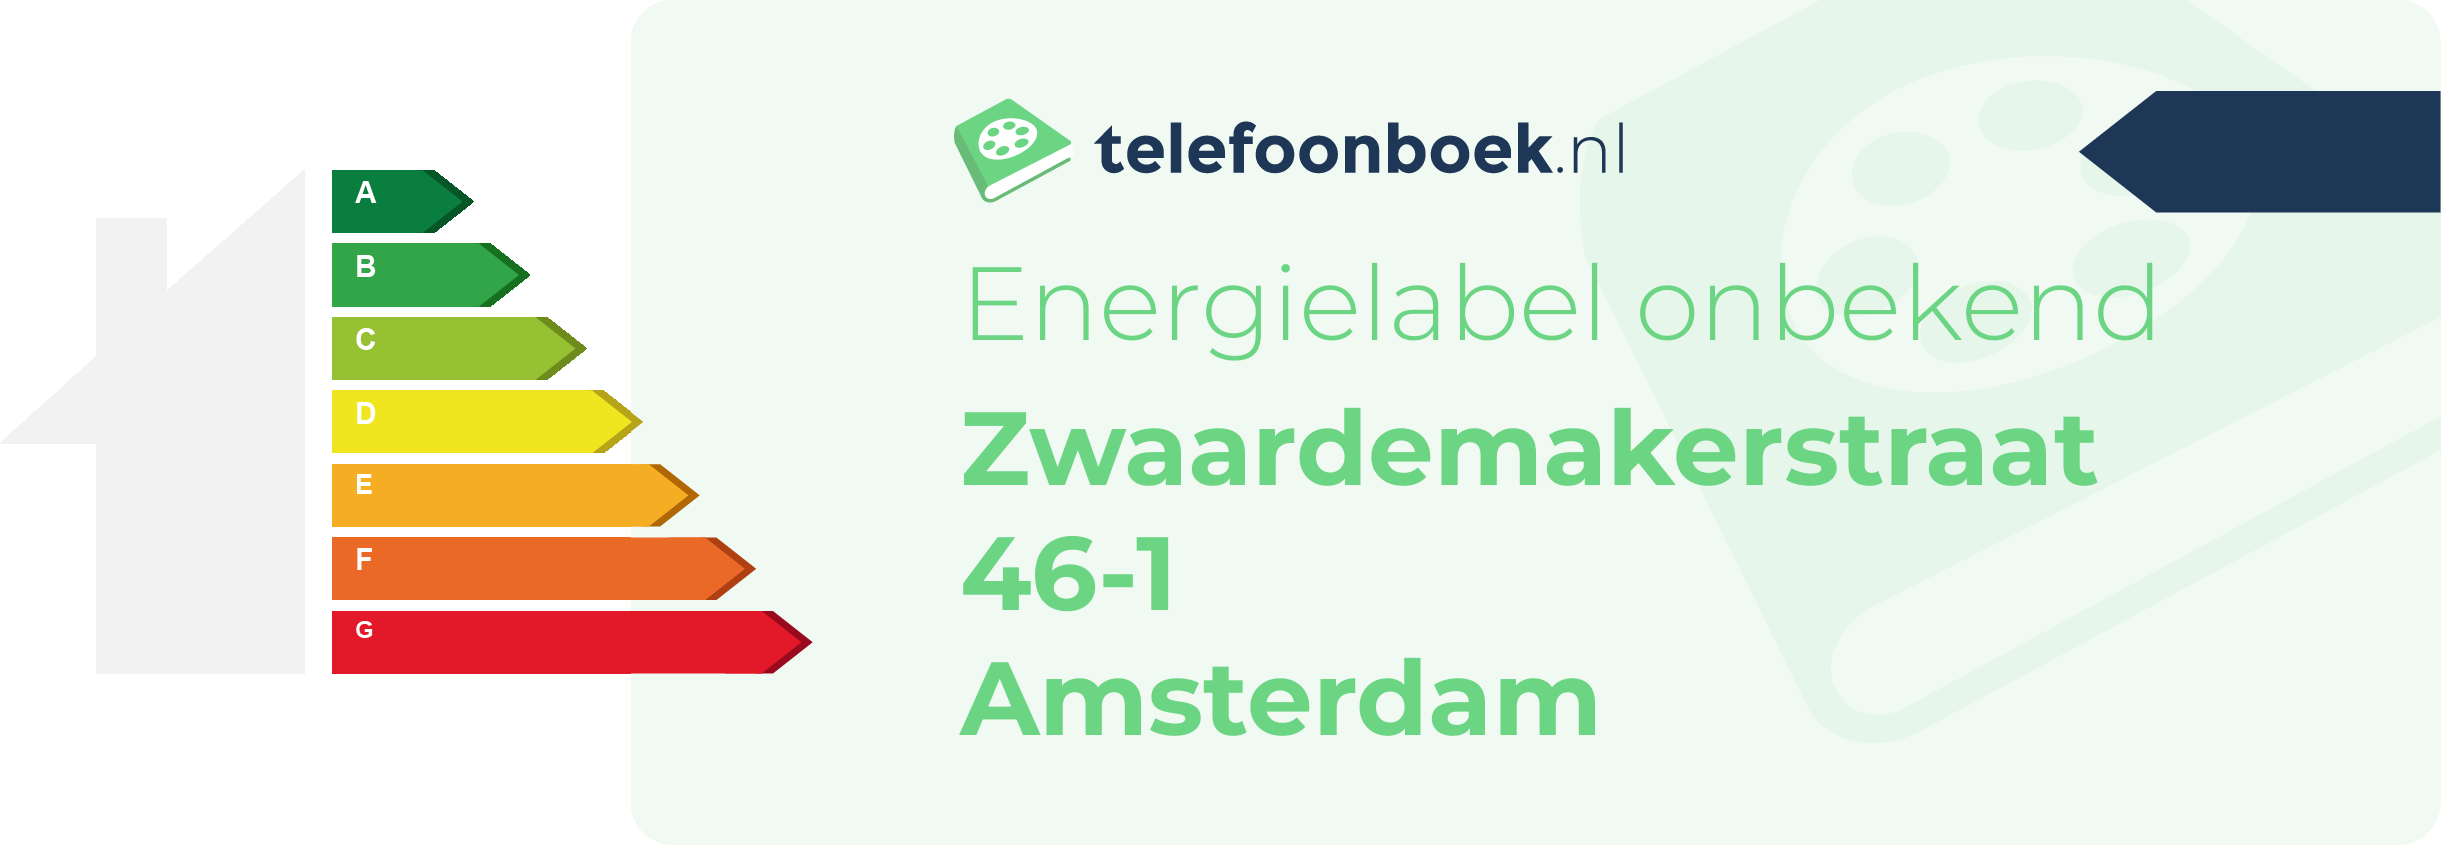 Energielabel Zwaardemakerstraat 46-1 Amsterdam